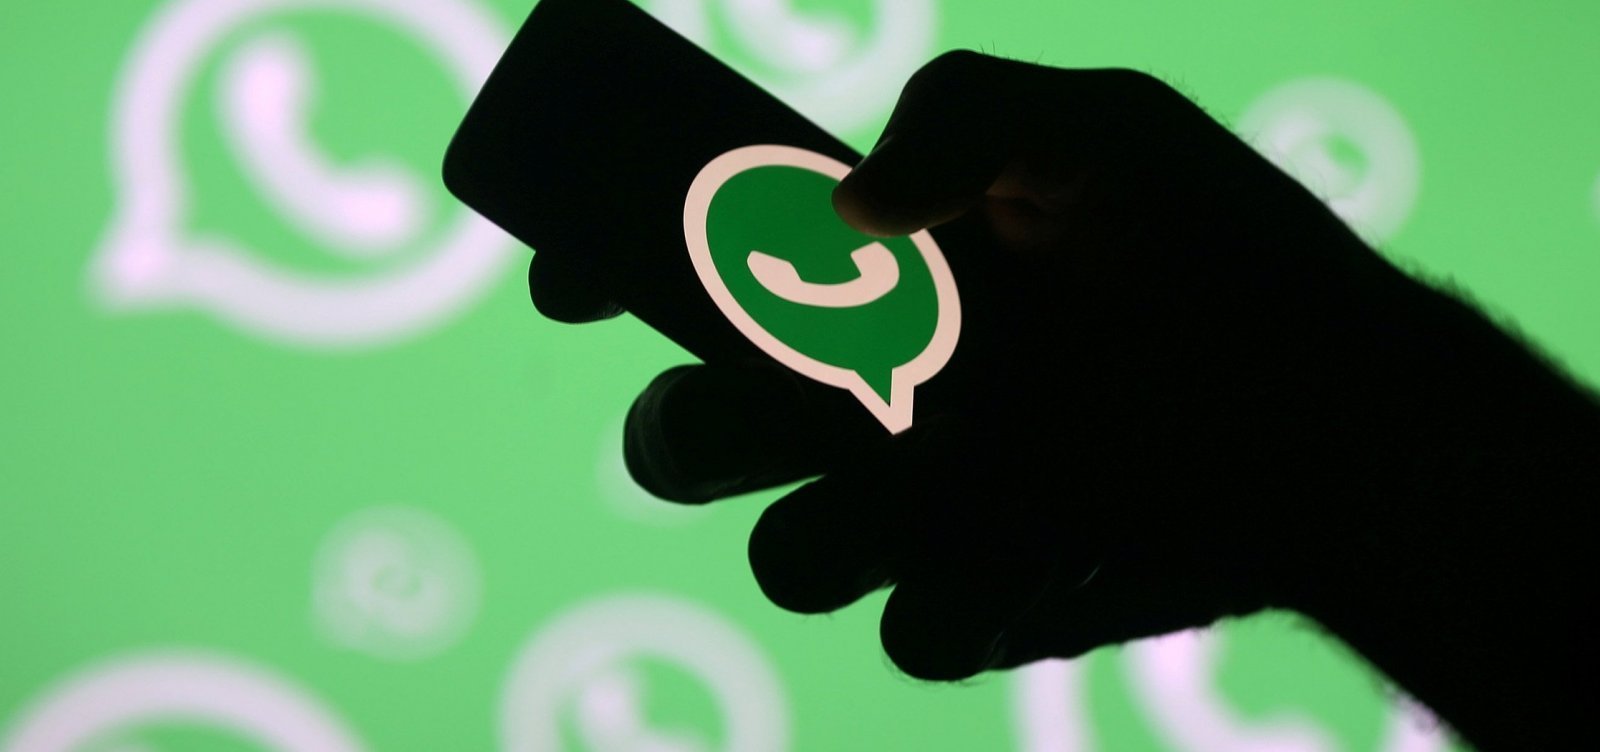 Nova política de privacidade do WhatsApp entra em vigor neste sábado